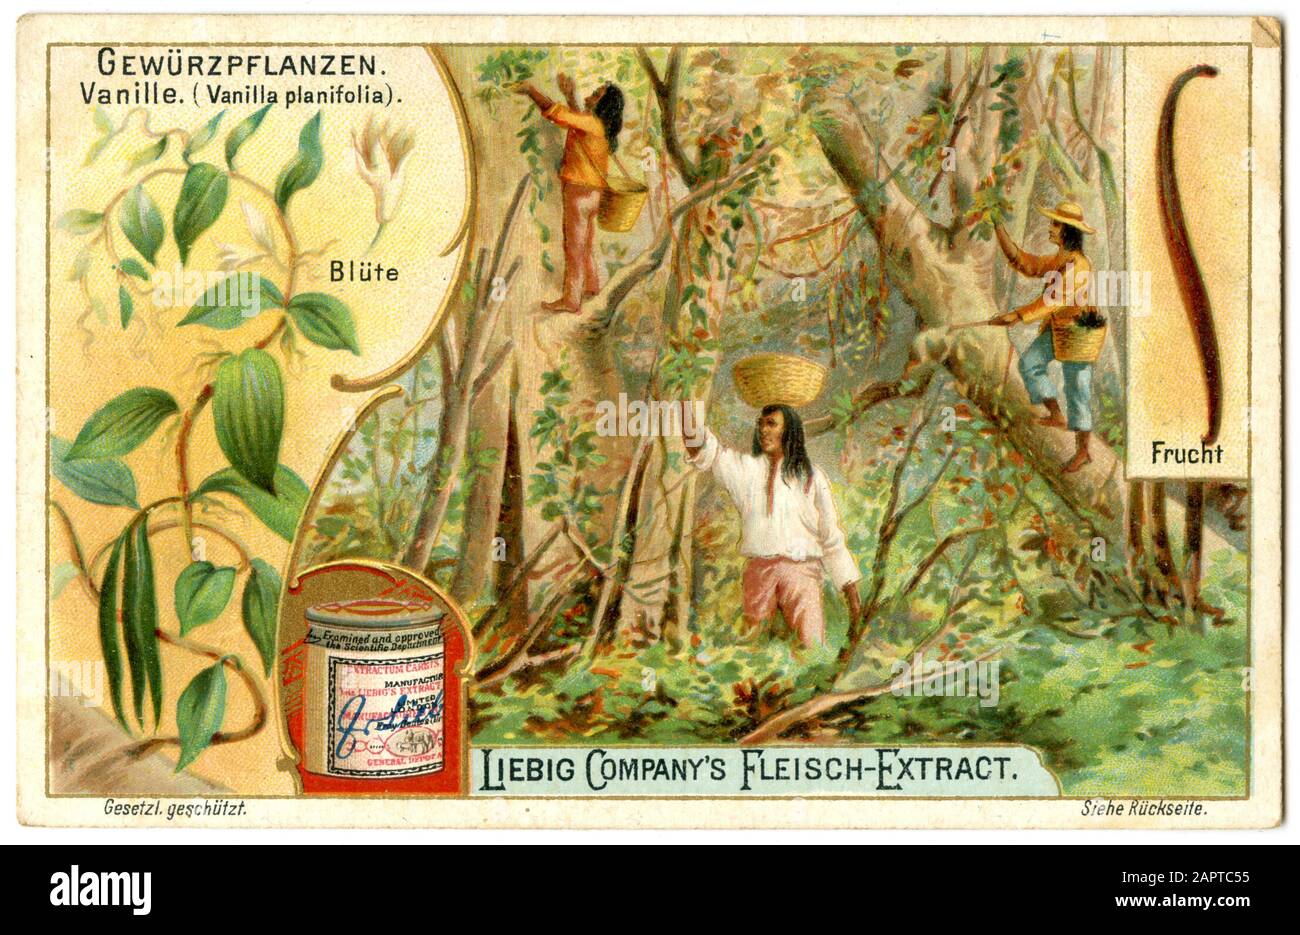 Plante de vanille, fruits et récolte sur une image Liebig vanille planifolia, (, ) Banque D'Images